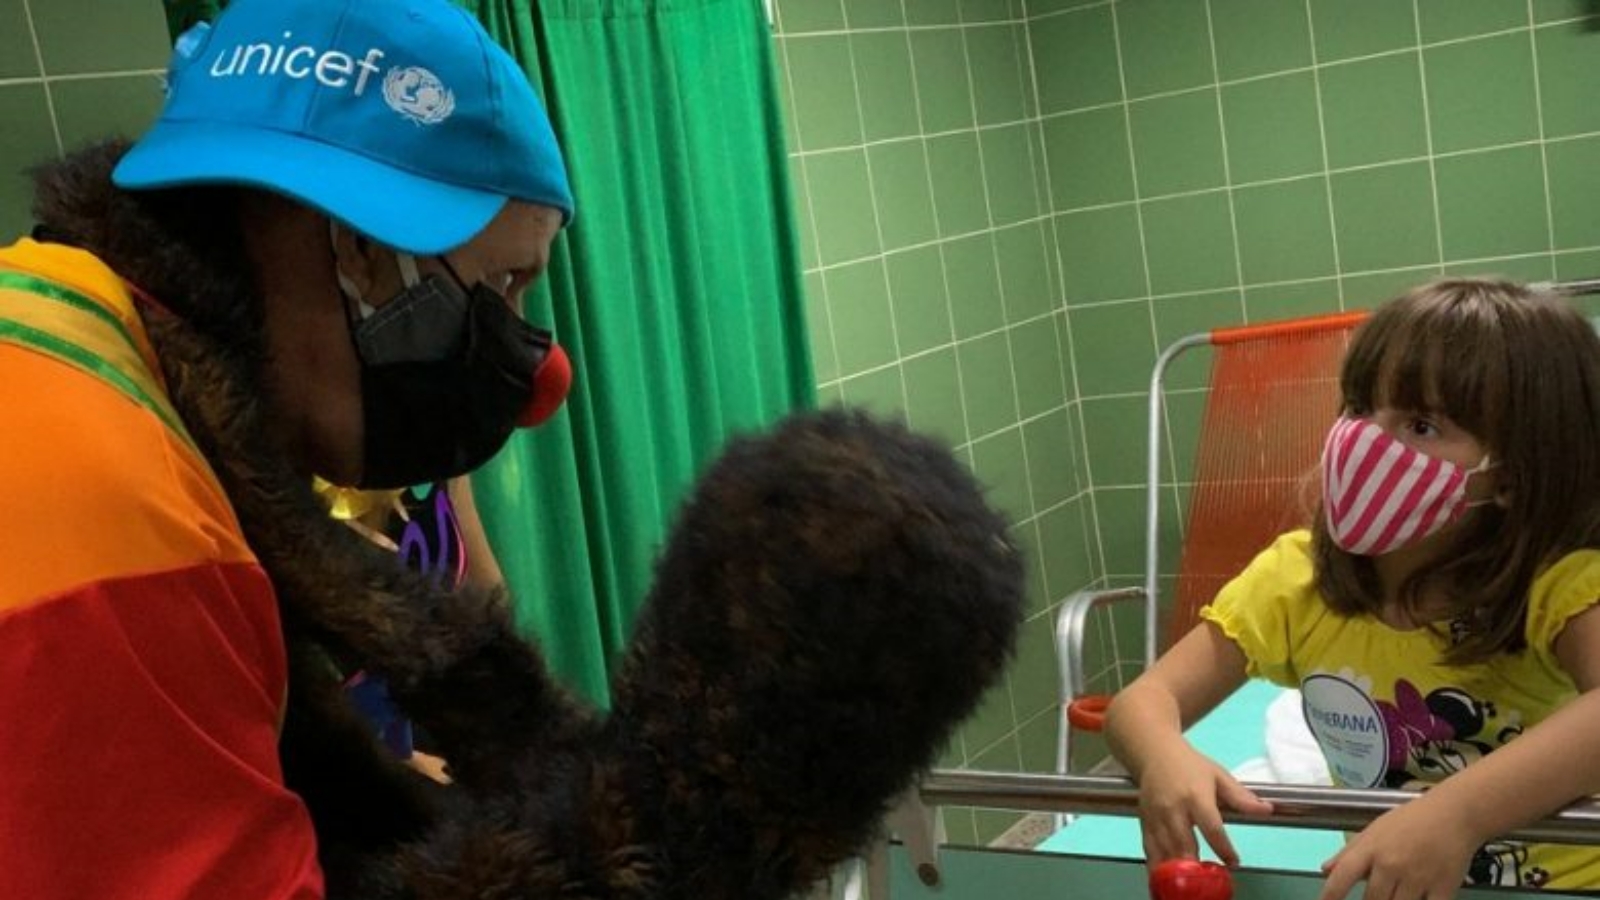 زيارة المهرجين تجعل الانتظار أقل إيلامًا لأغاثا، وهي طفلة كوبية تبلغ من العمر سبع سنوات تلقت للتو الجرعة الثالثة والأخيرة من اللقاح الذي تختبره الجزيرة حاليًا لحماية الأطفال من COVID-19 أيضًا.